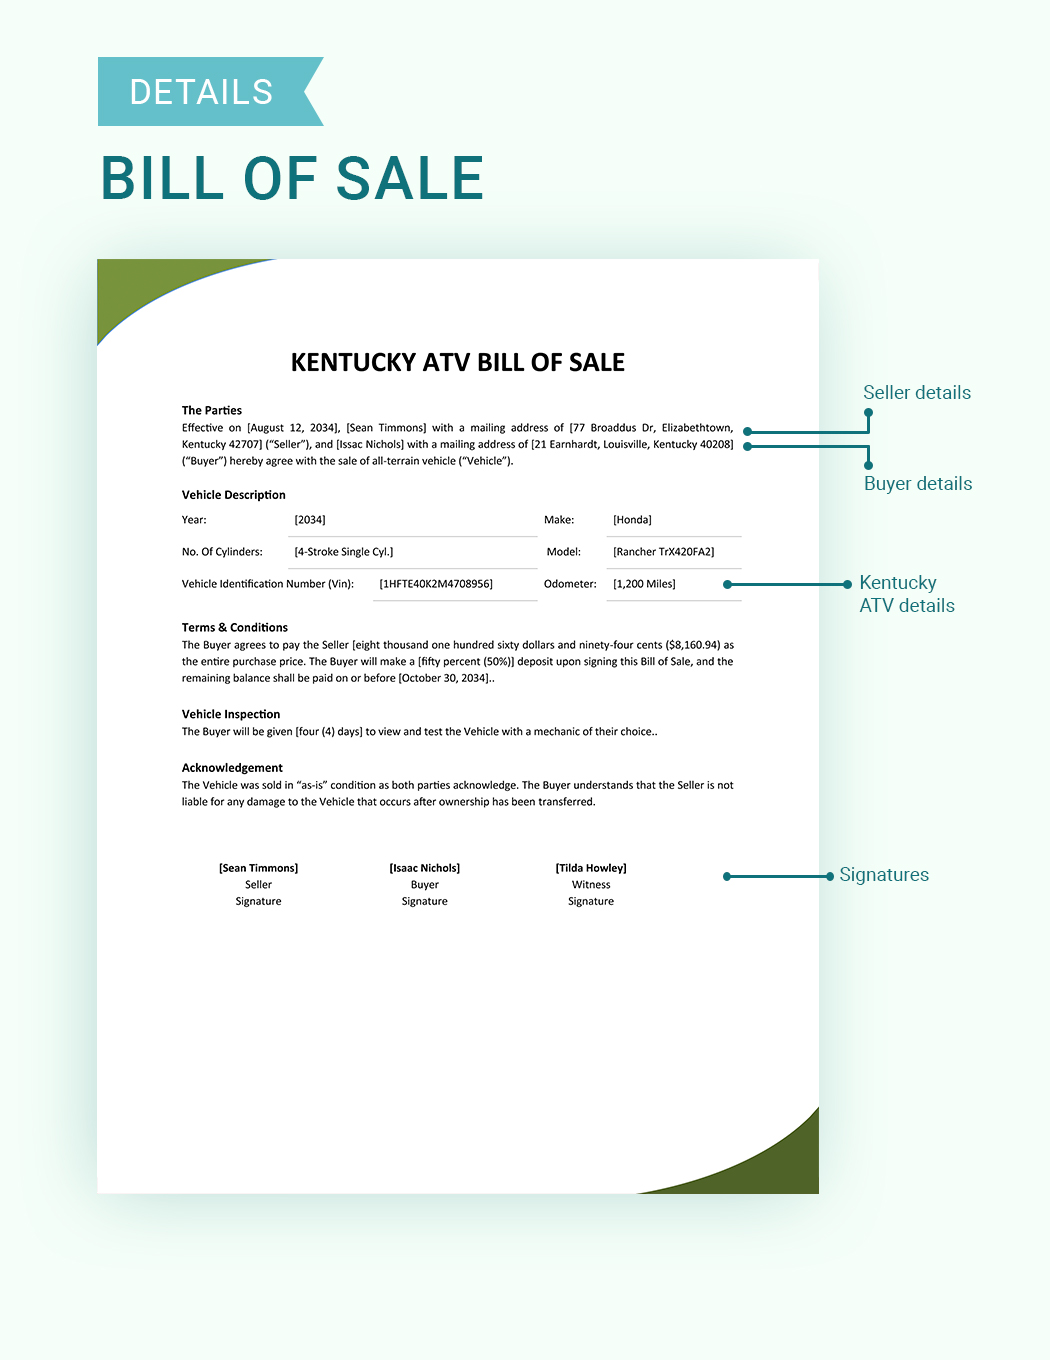 Kentucky ATV Bill Of Sale Template